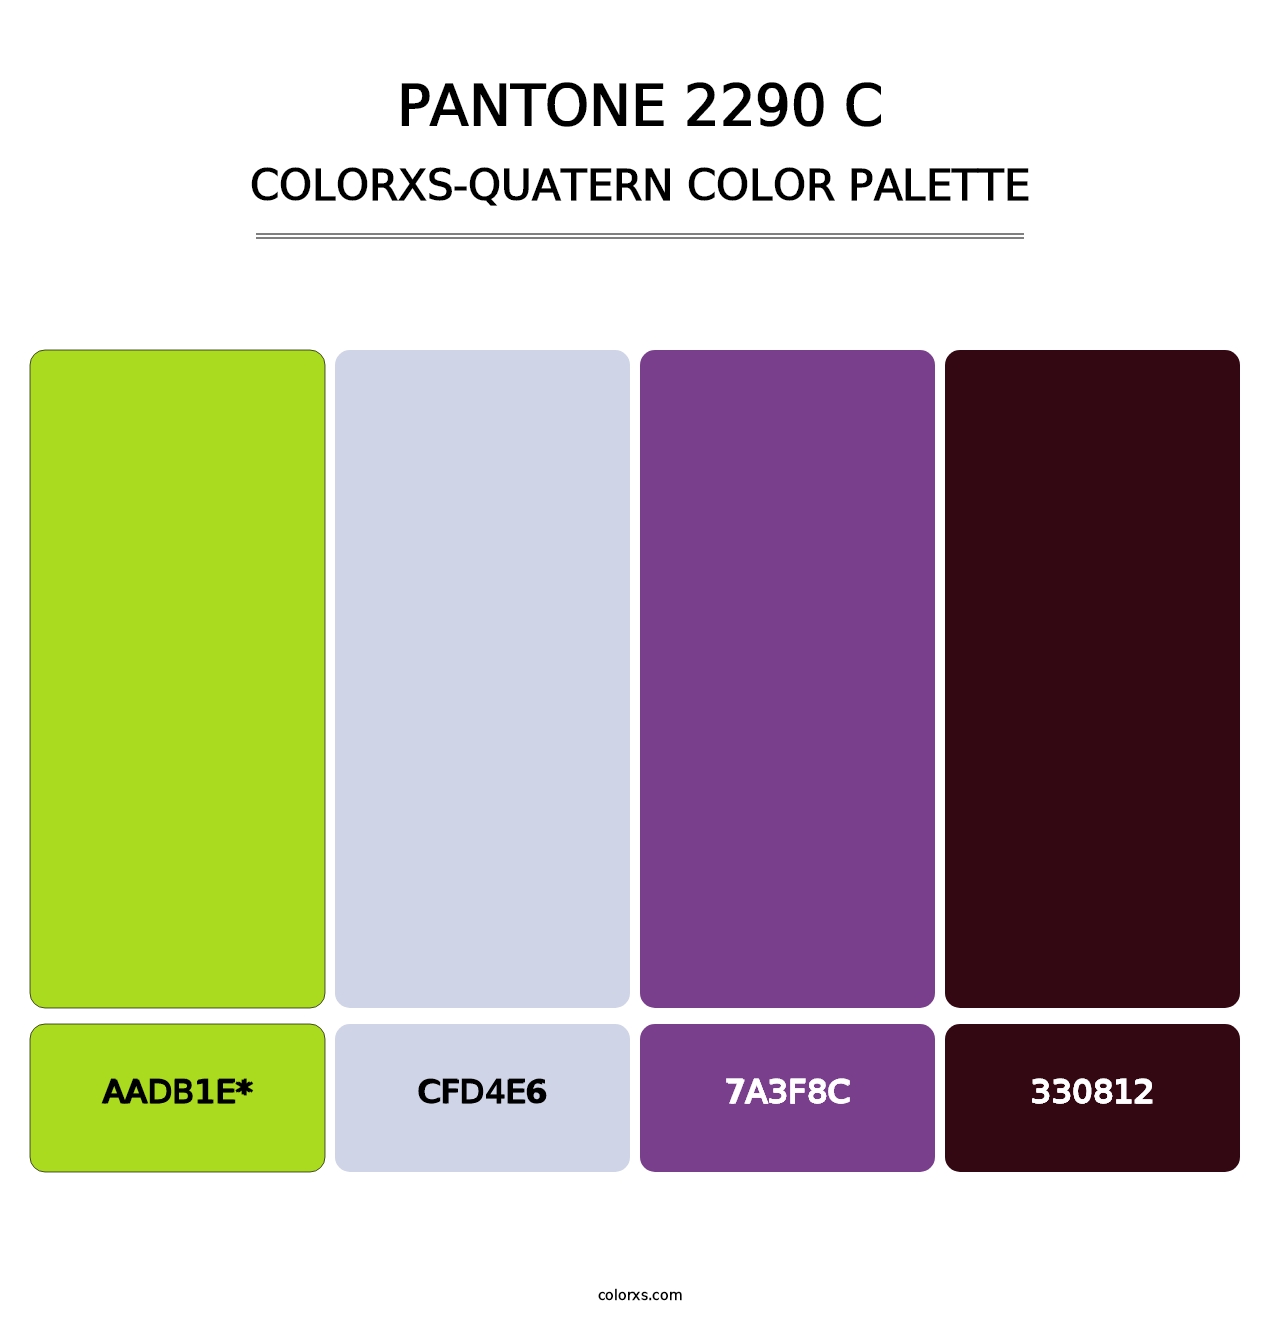 PANTONE 2290 C - Colorxs Quatern Palette